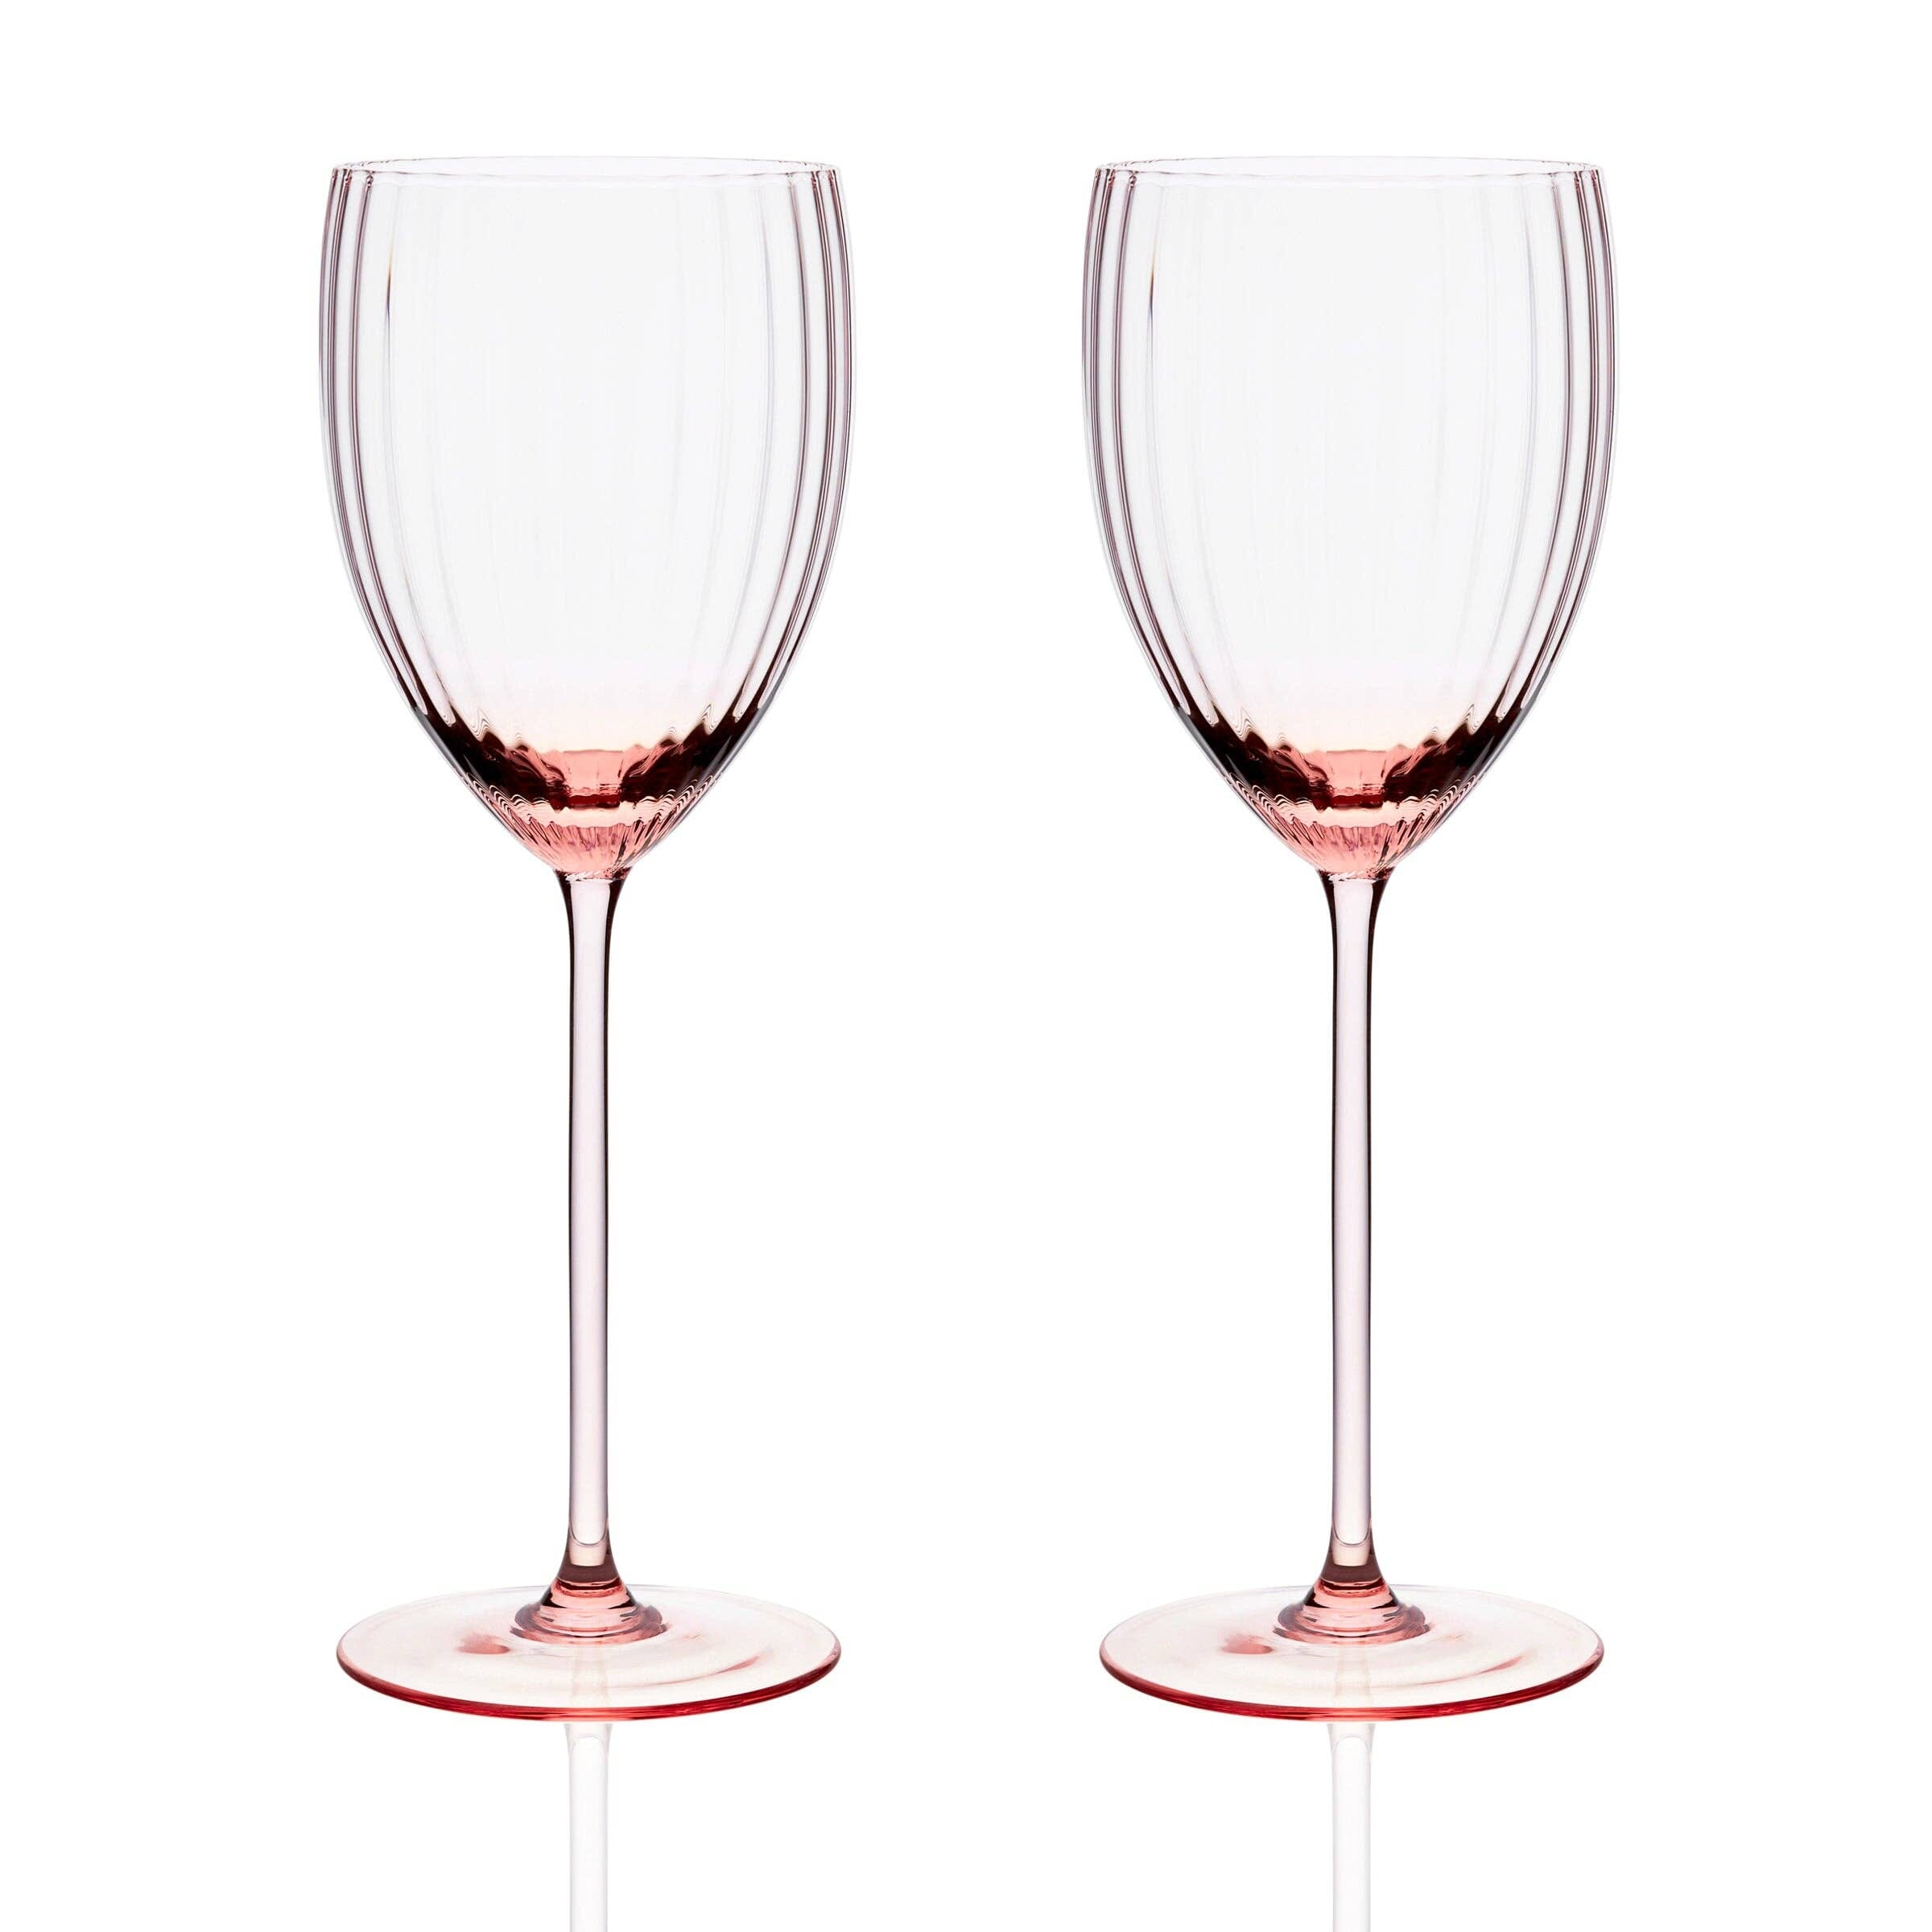 https://www.vividchill.com/cdn/shop/files/quinn-rose-white-wine-glasses-set2-tabletop-caskata-845461.jpg?v=1699560703